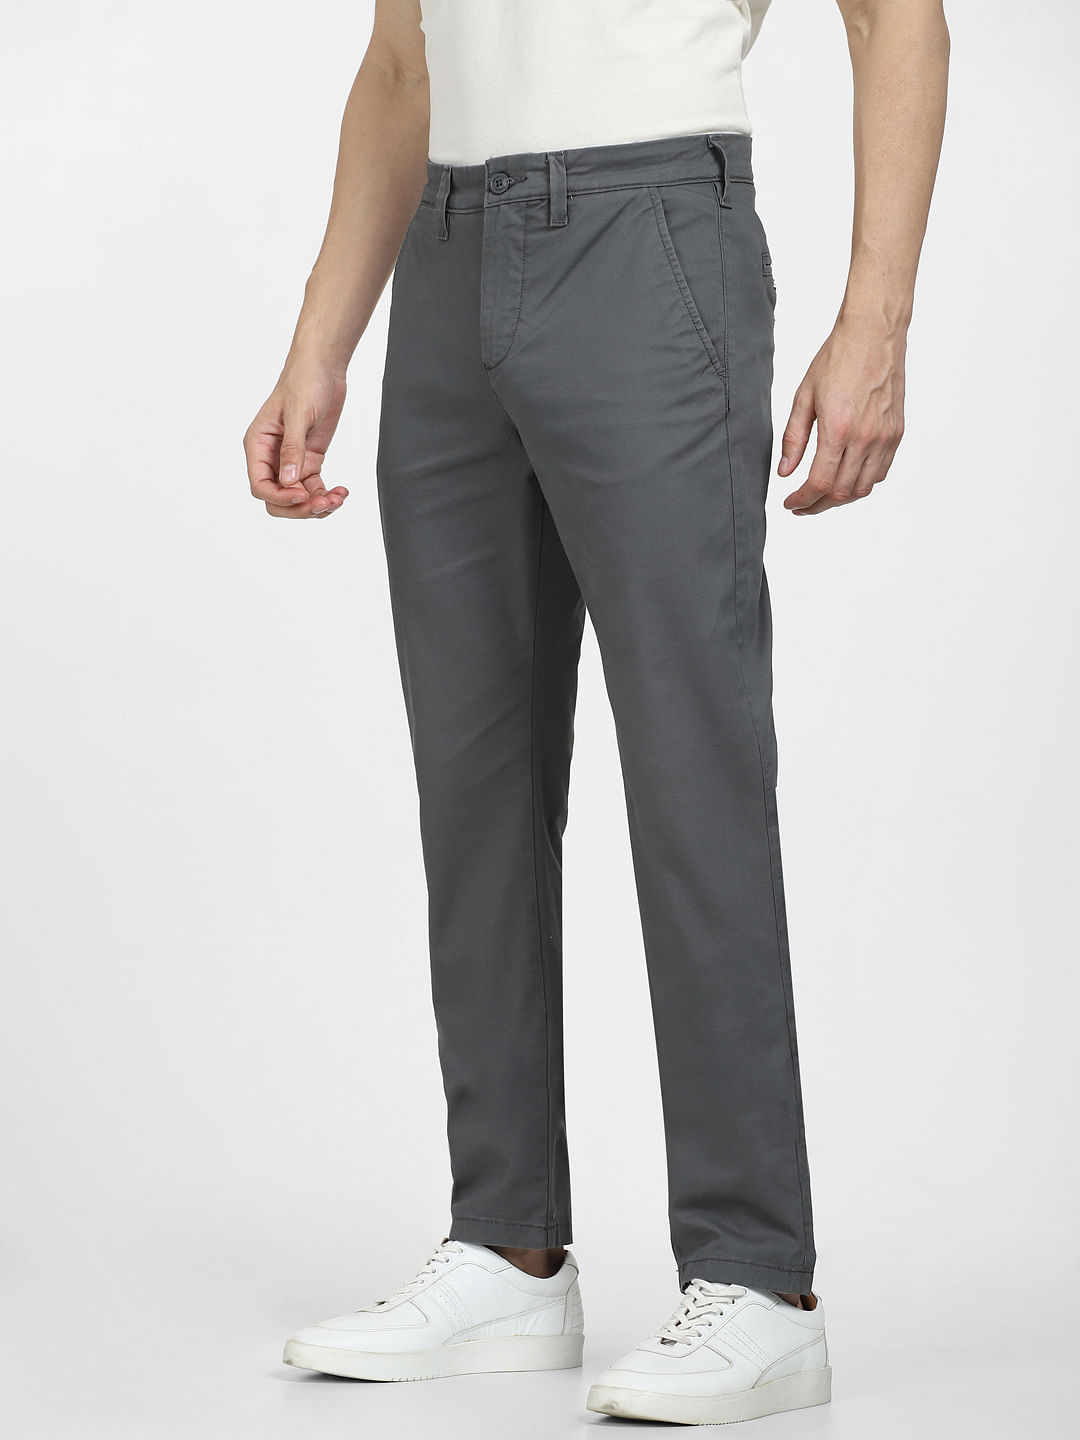 Men's set hoodie + pants - dark grey Z49 | Ombre.com - Men's clothing online